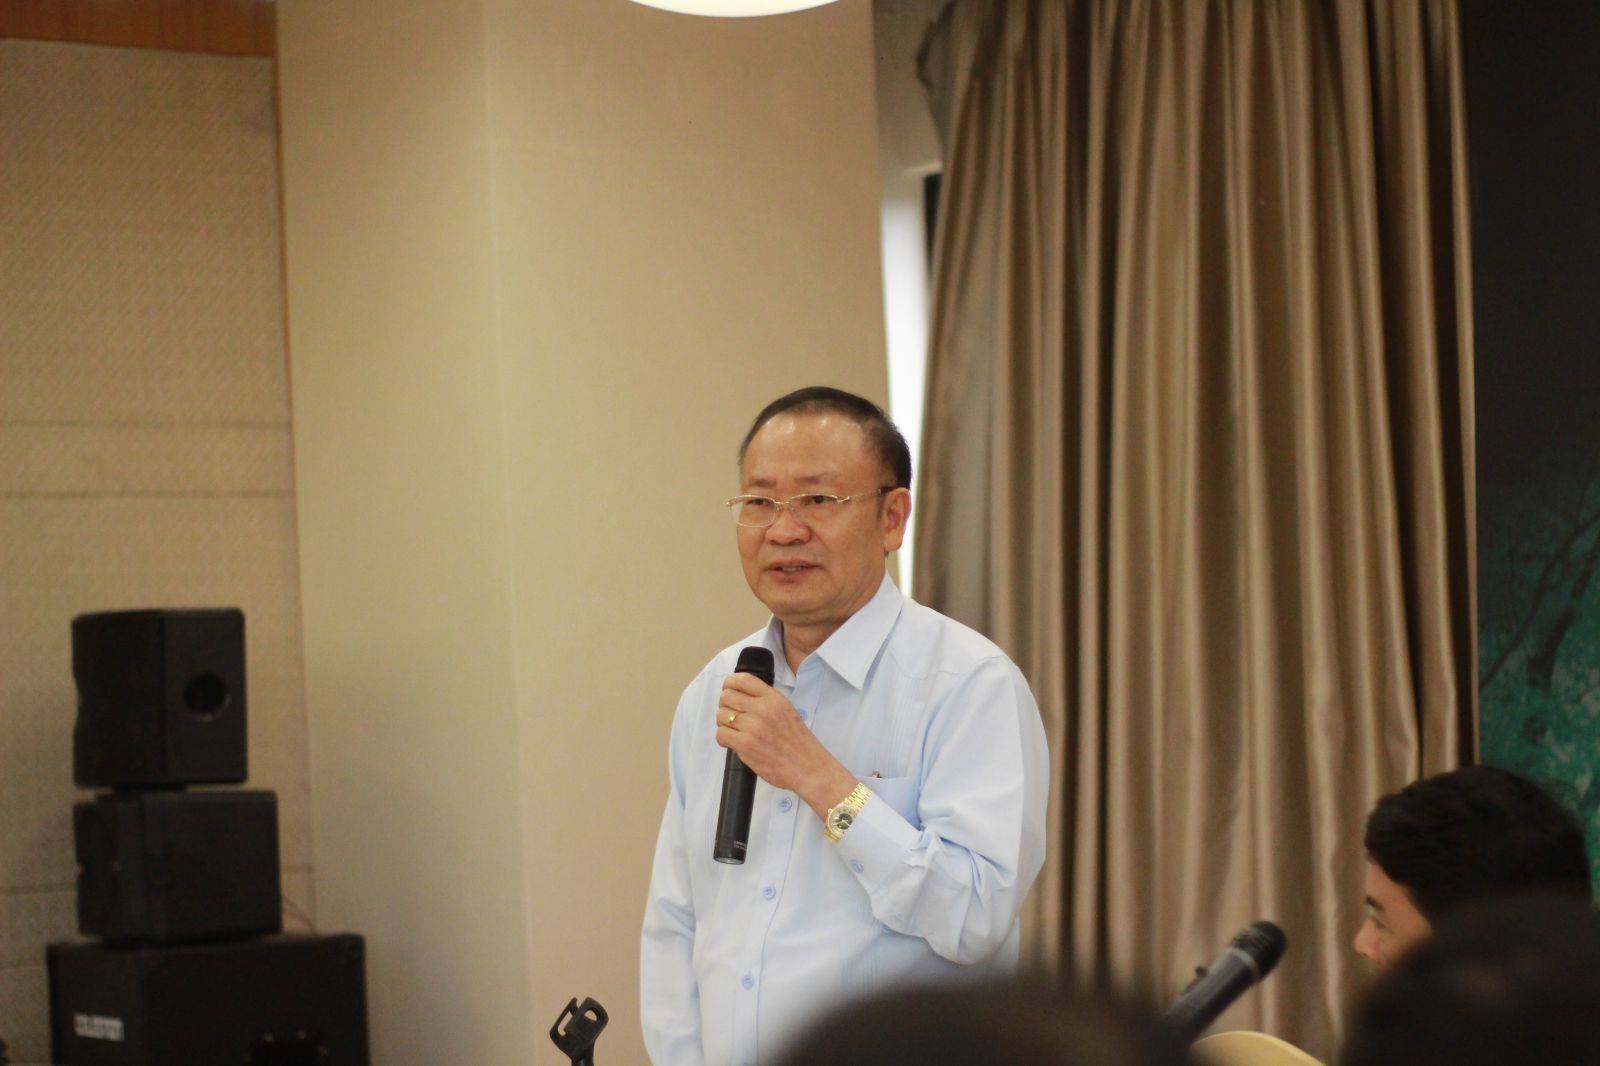 Nguyễn Mạnh Thản, chairman of Hà Nội Tourism Real Estate Association.